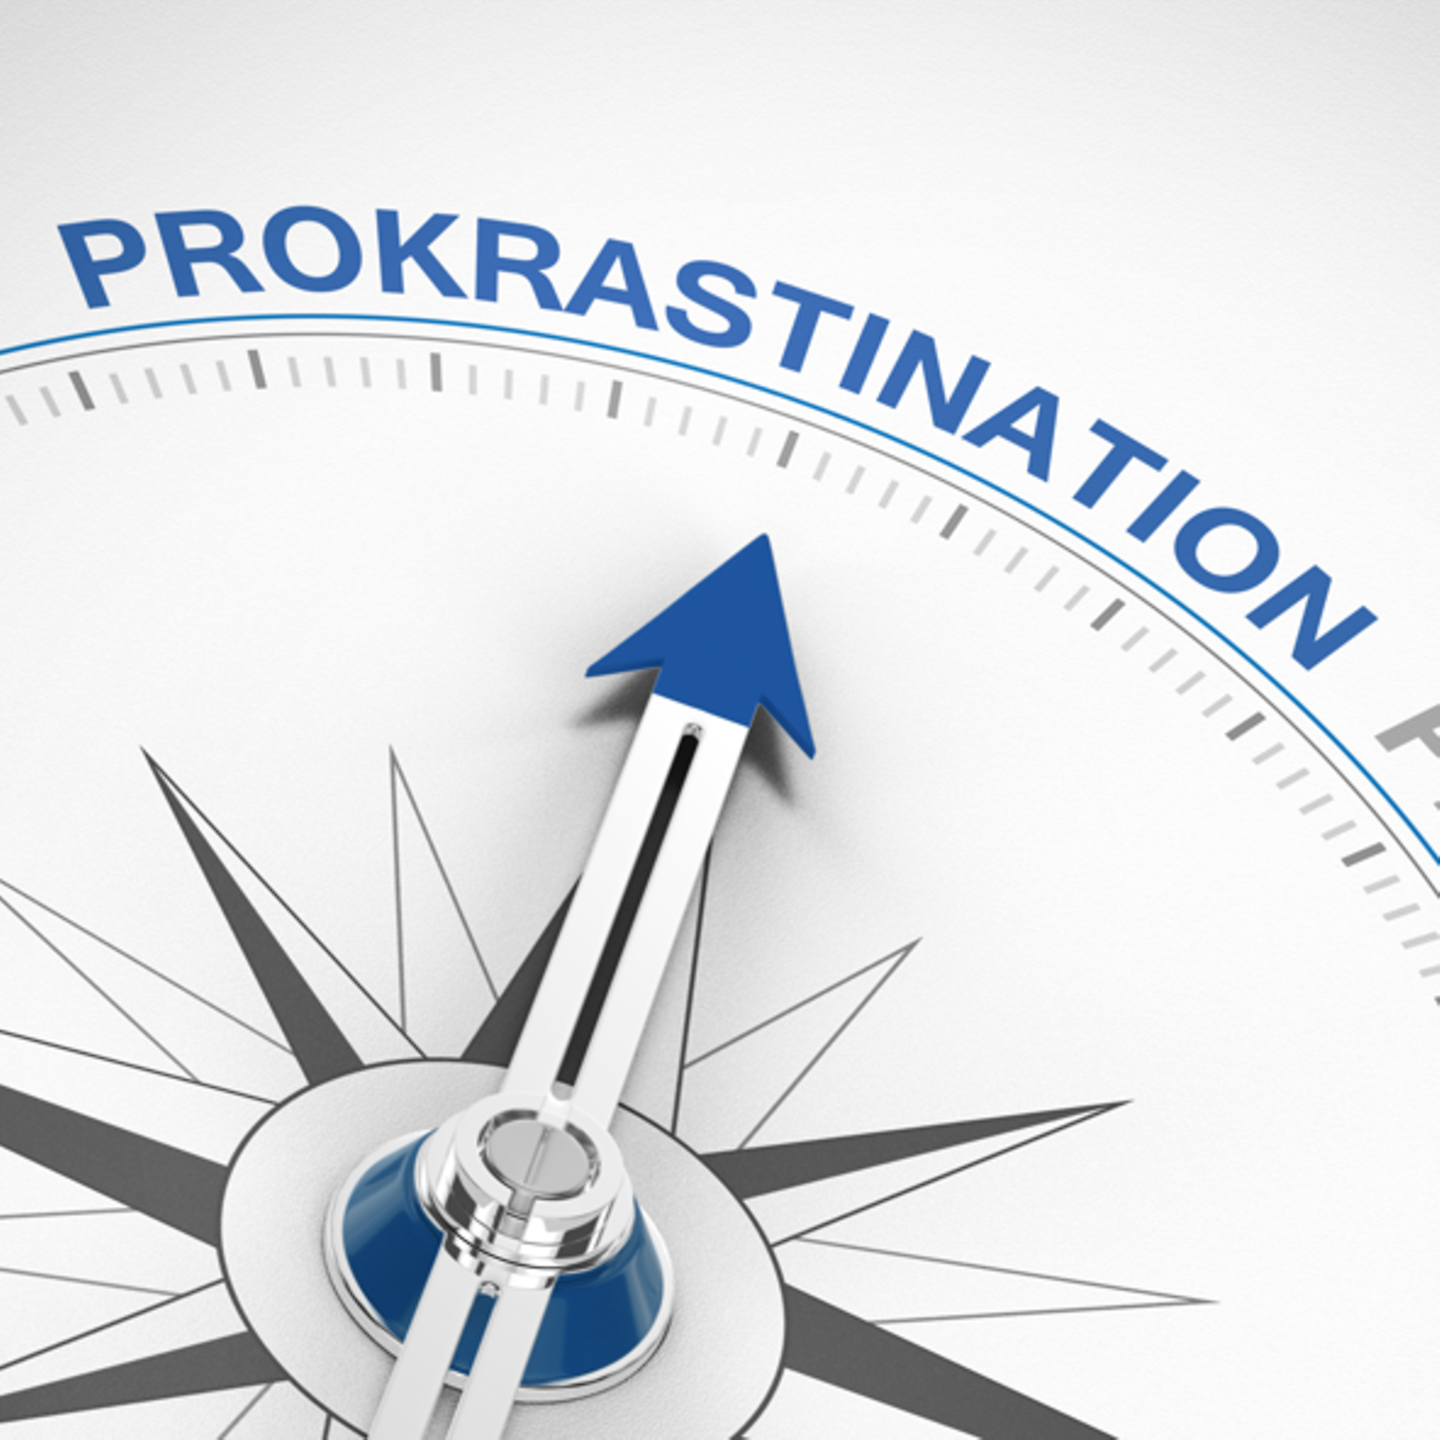 Zu sehen ist ein Kompass, dessen zeiger auf den Schriftzug "Prokrastination" zeigt